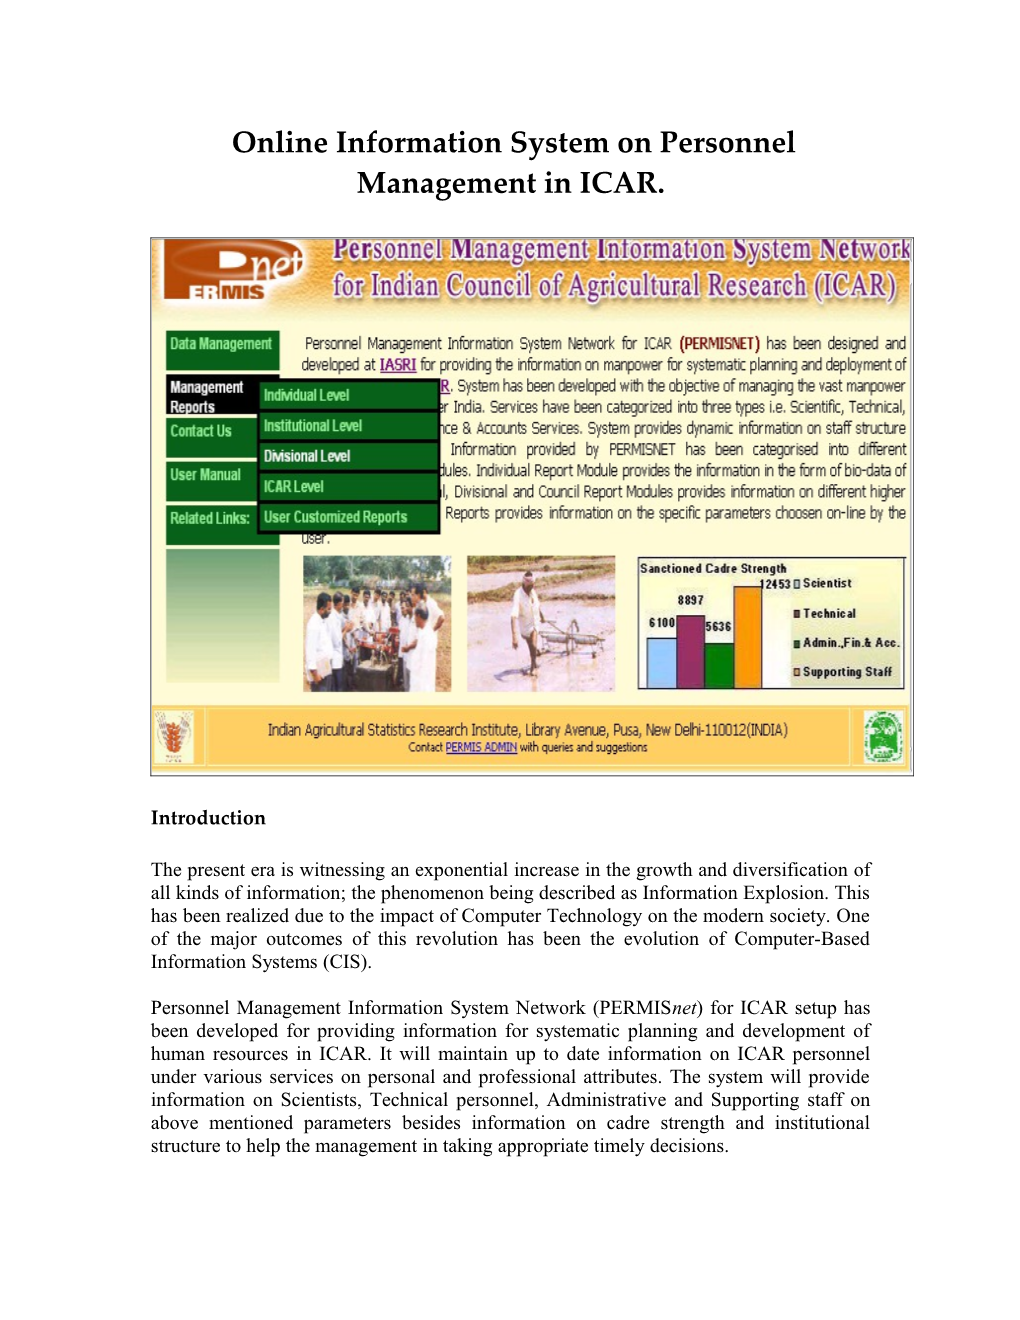 Online Information System on Personnel Managementin ICAR